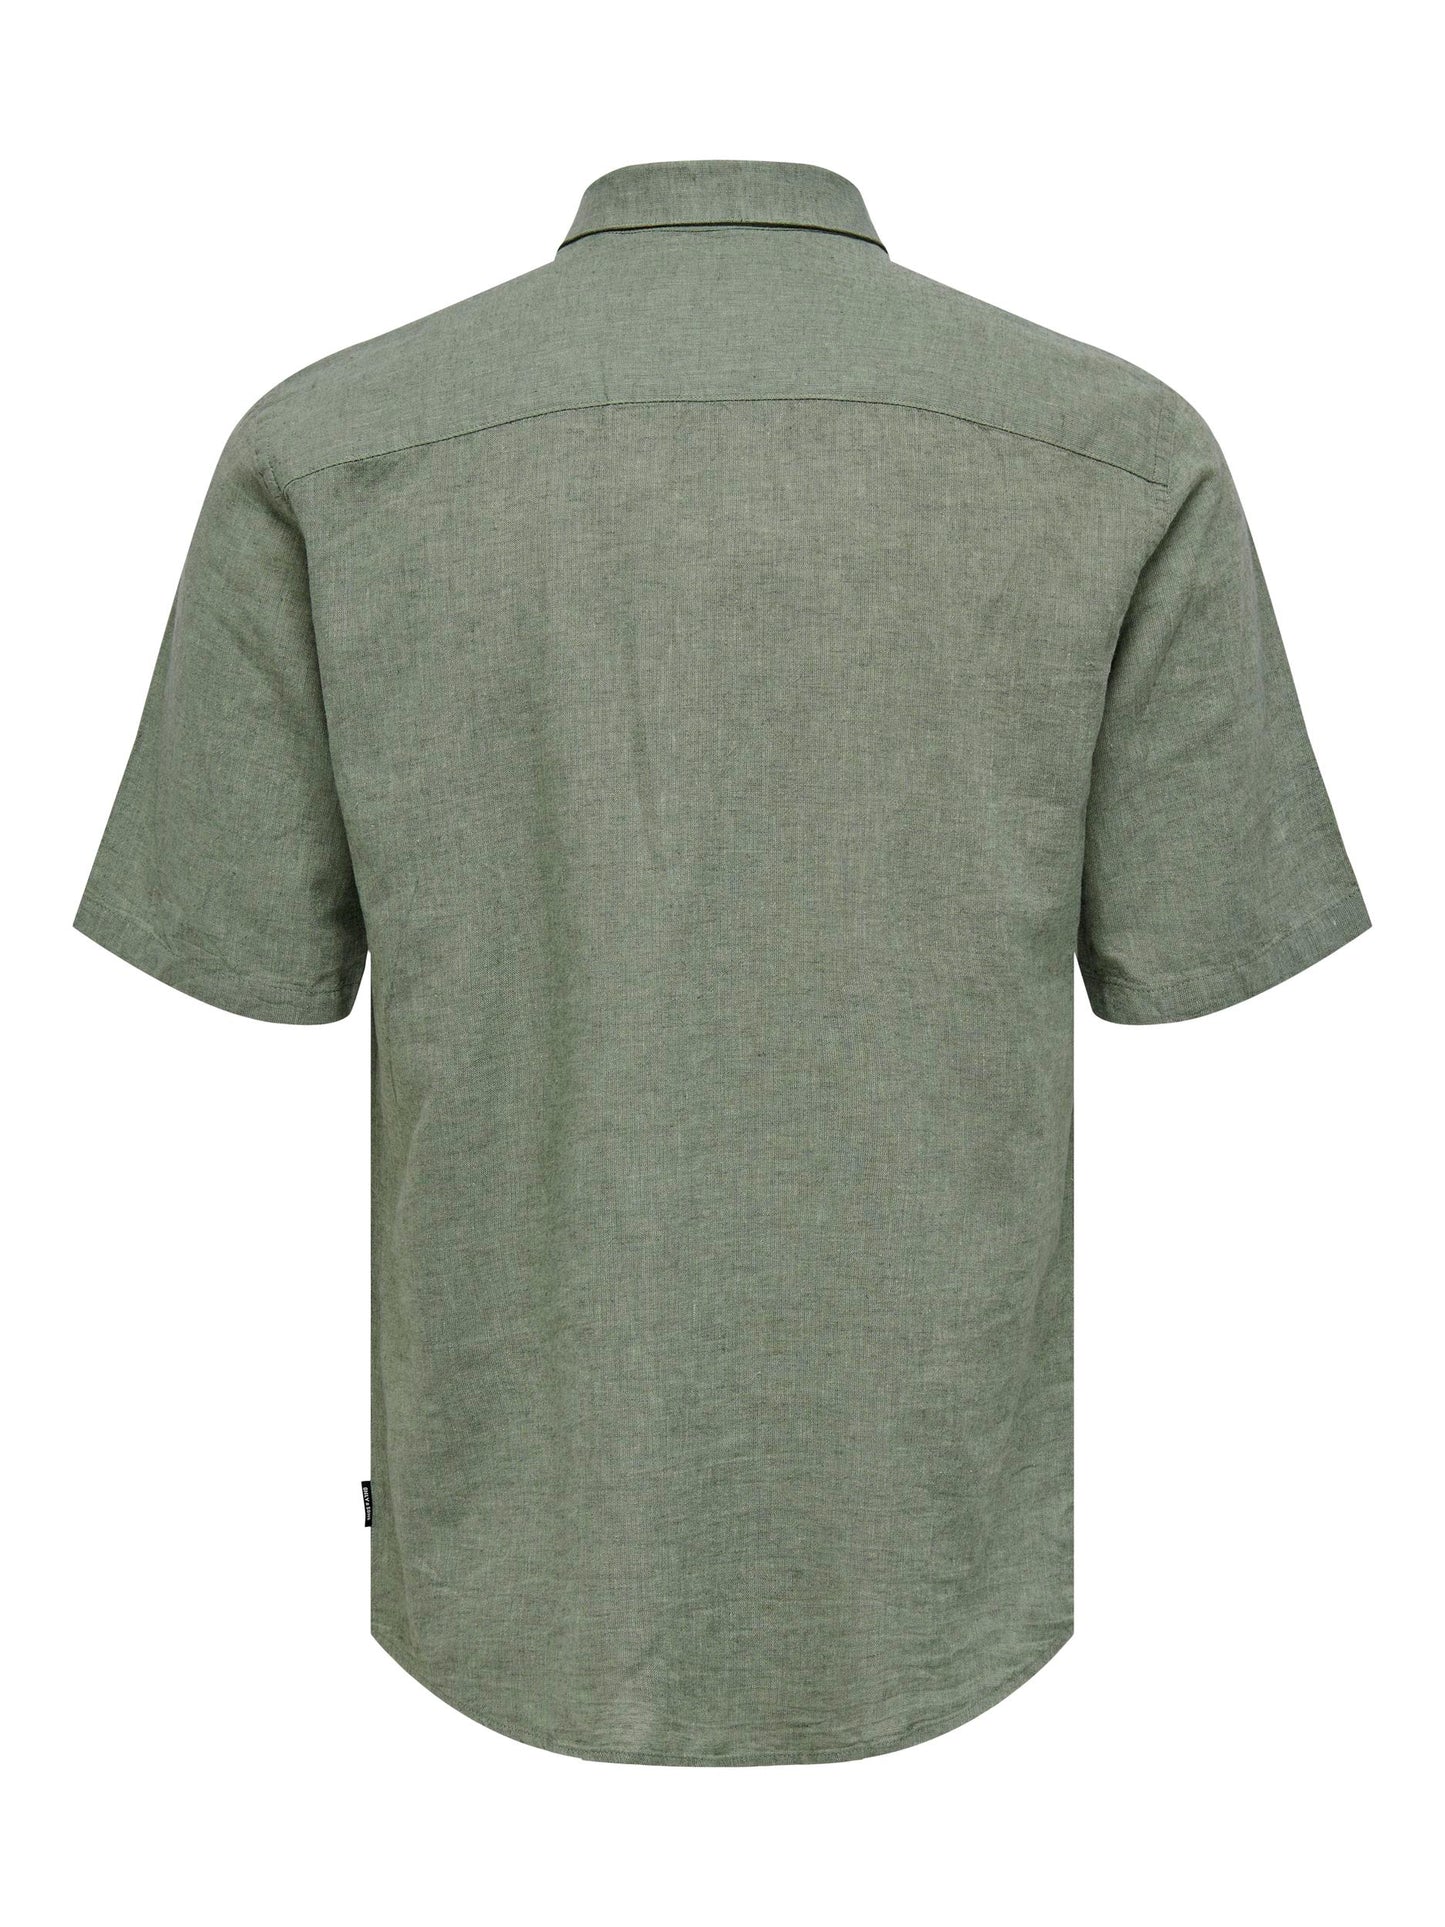 Caiden Solid Linen Shirt